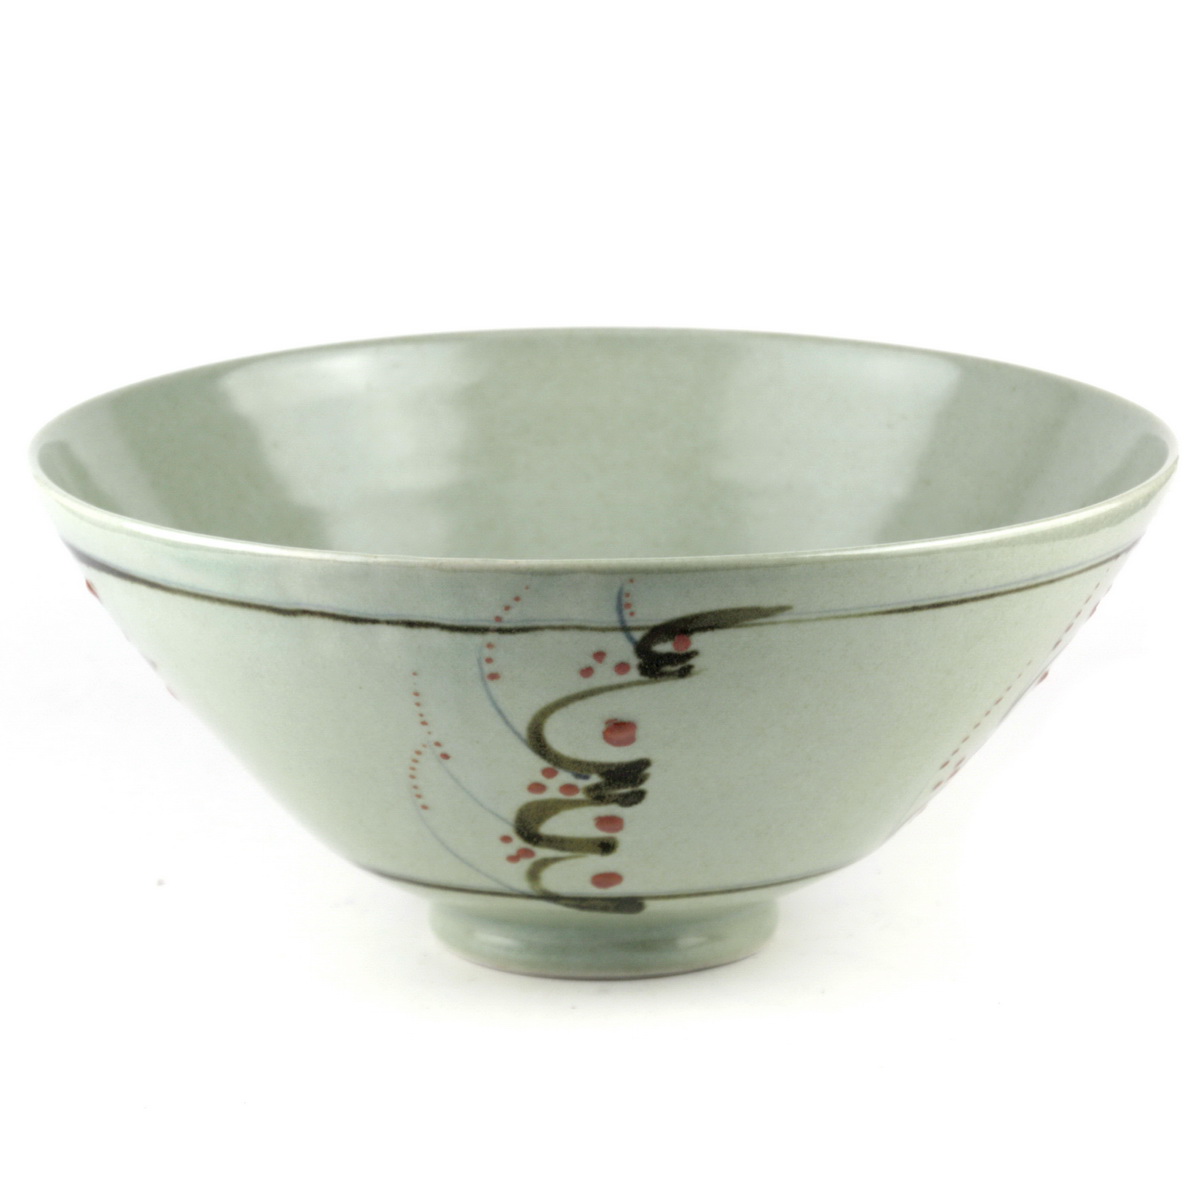 Large porcelain bowl SOLD